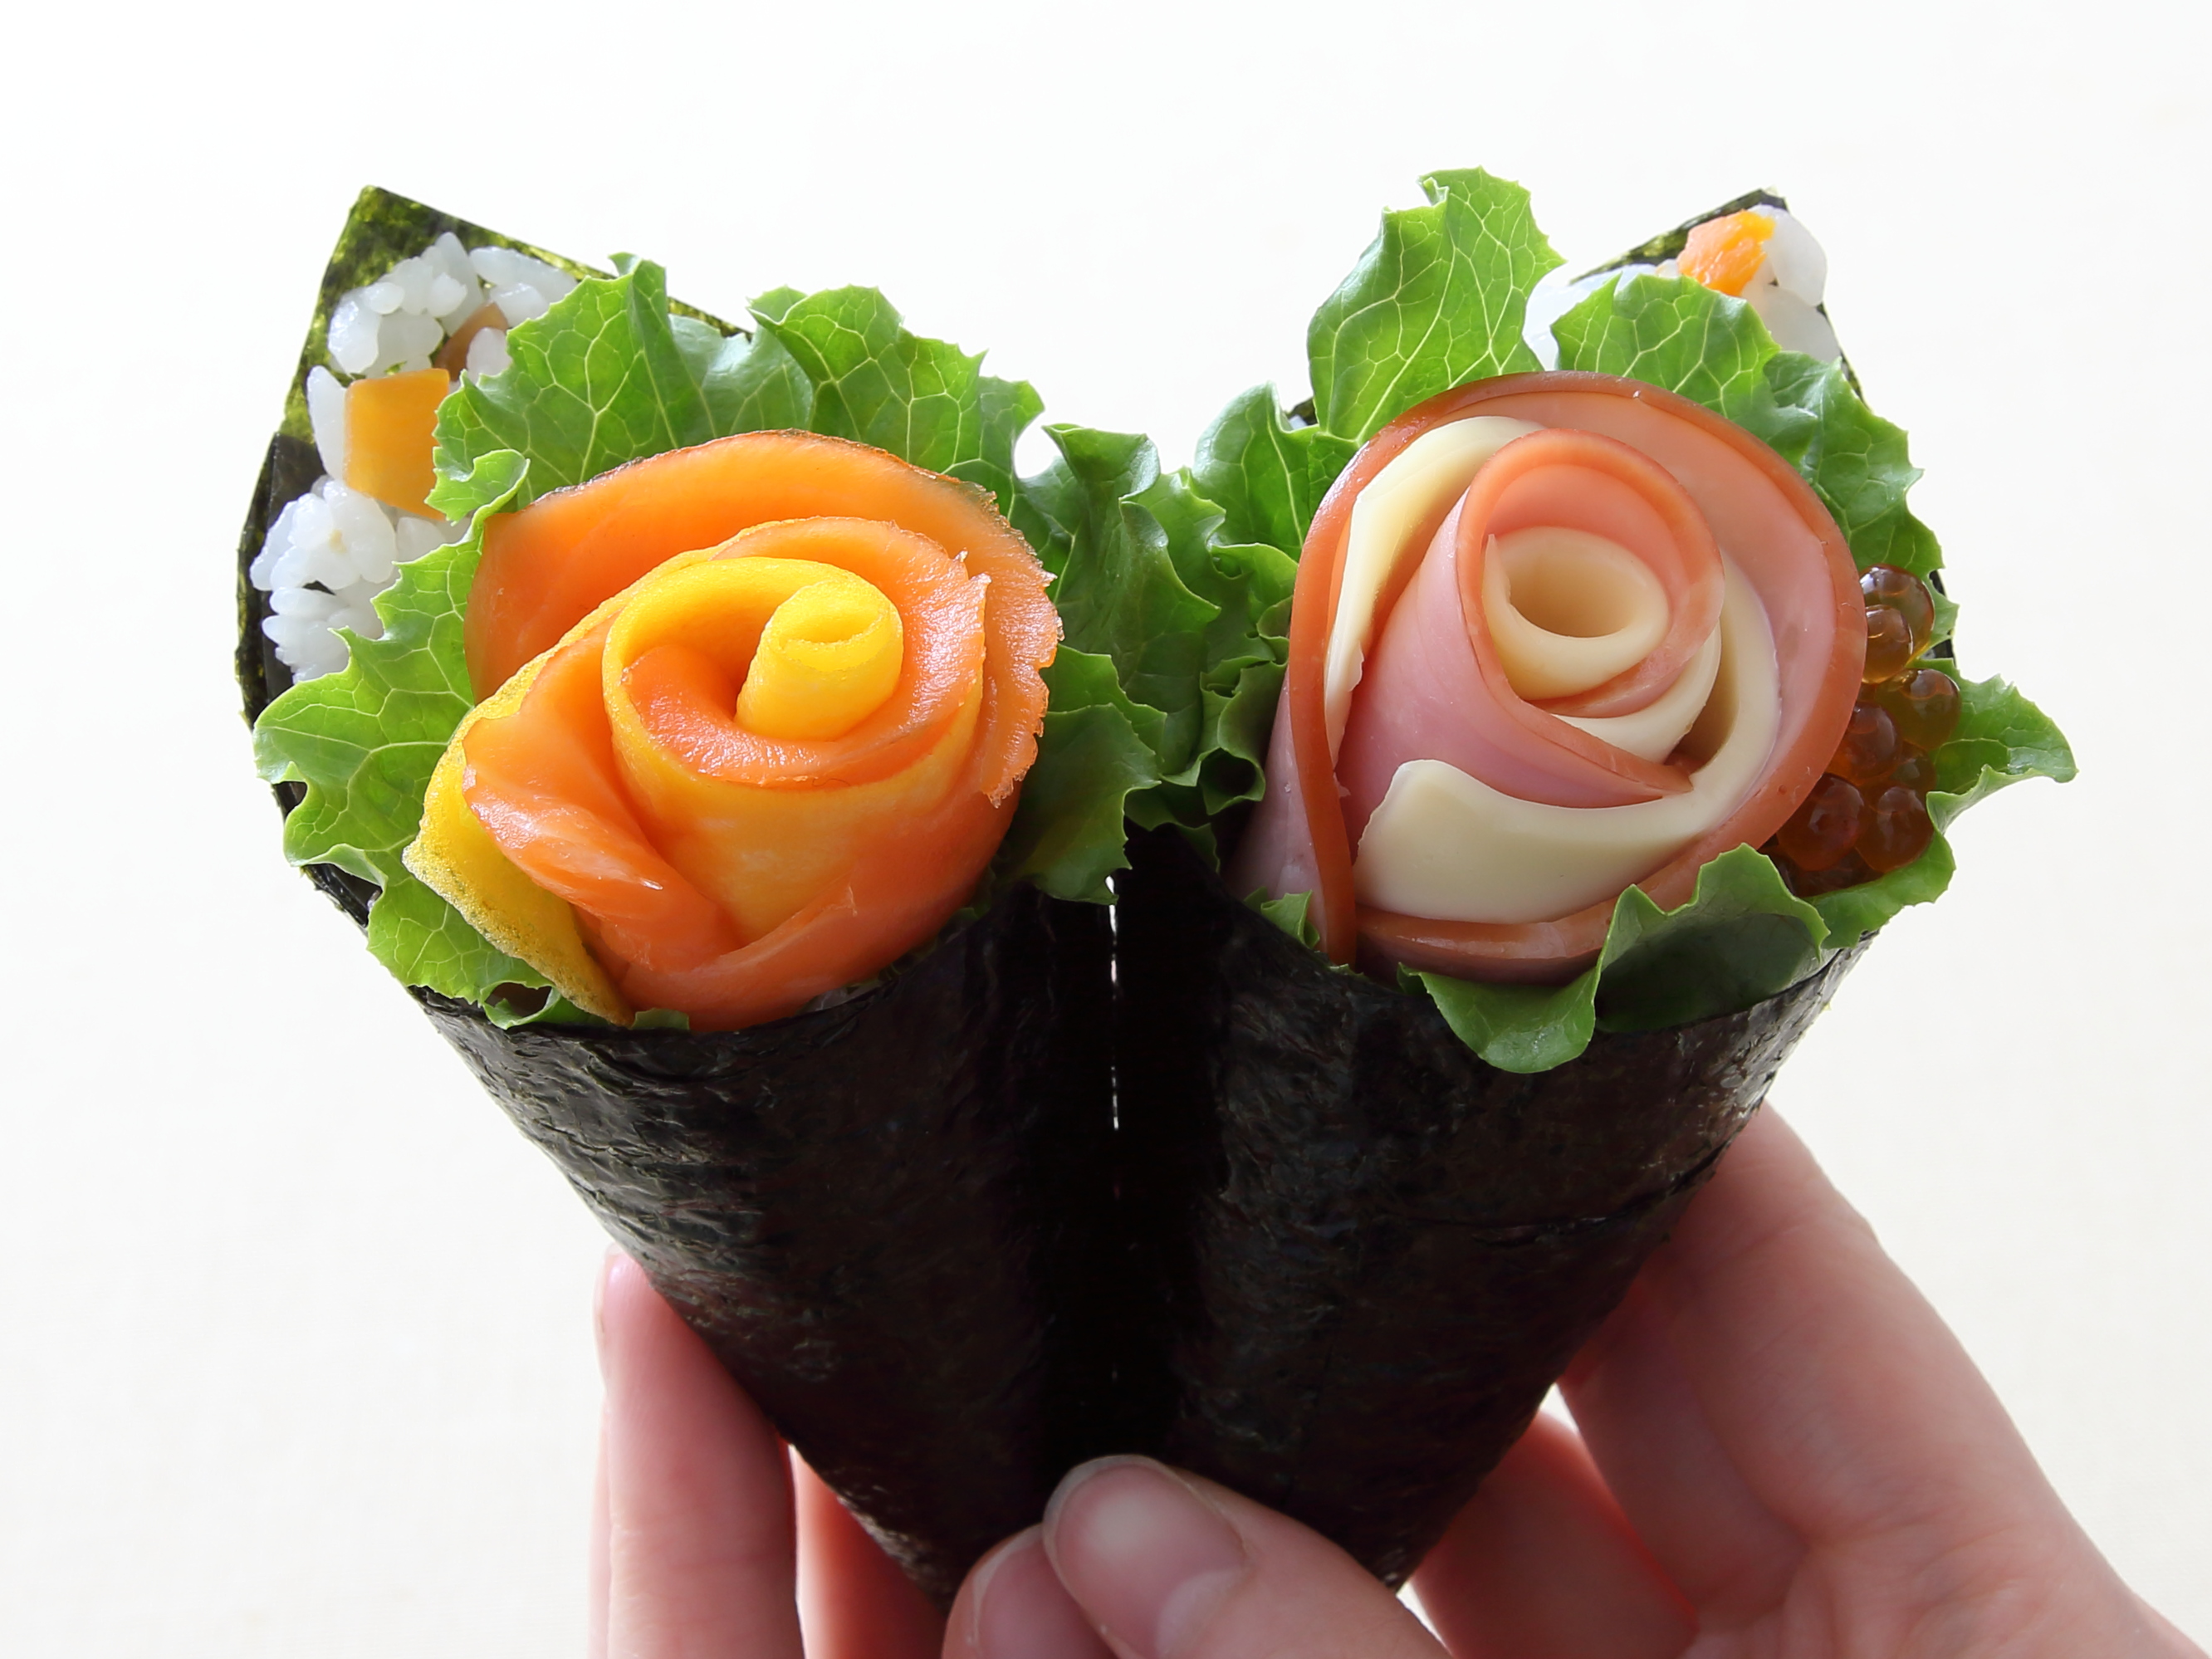 想い伝える花束手巻き寿司 五目 サーモン ハム のレシピ 作り方 おうちレシピ ミツカングループ